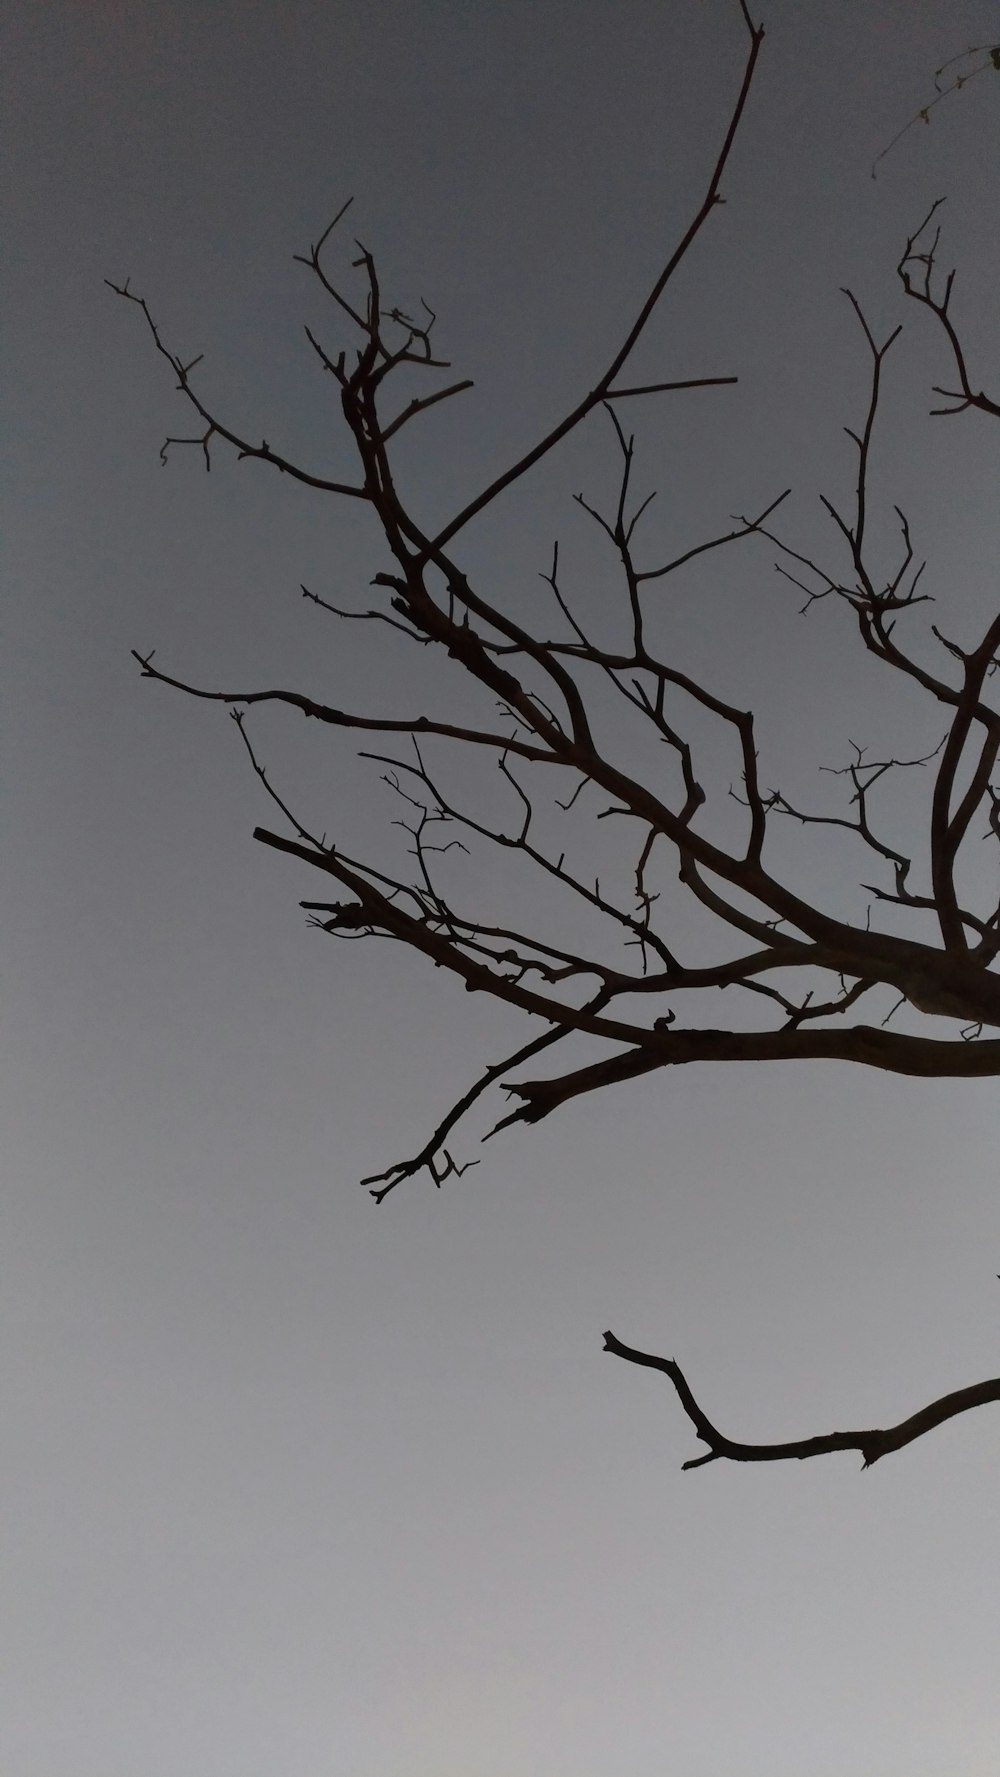 rama de árbol bajo el cielo gris